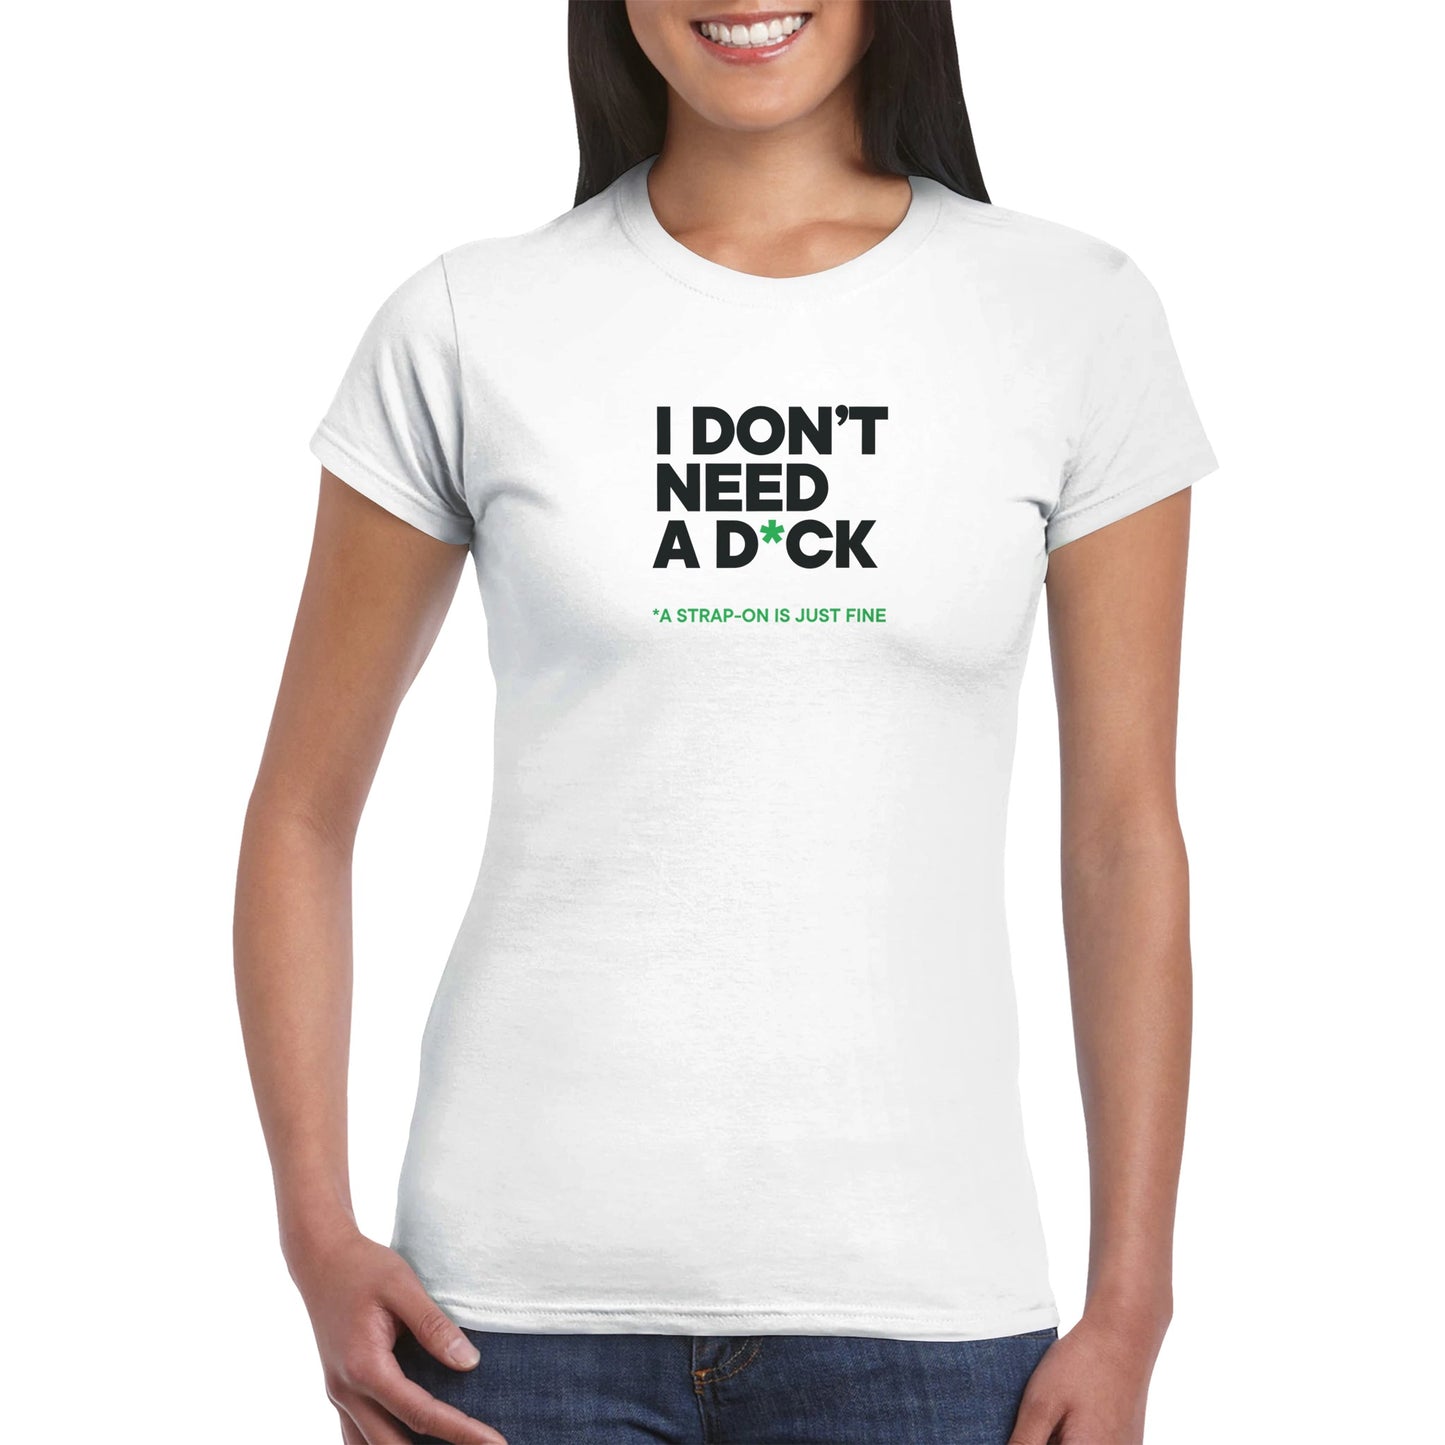 I DON'T NEED A D*CK - Classic Womens Crewneck T-shirt